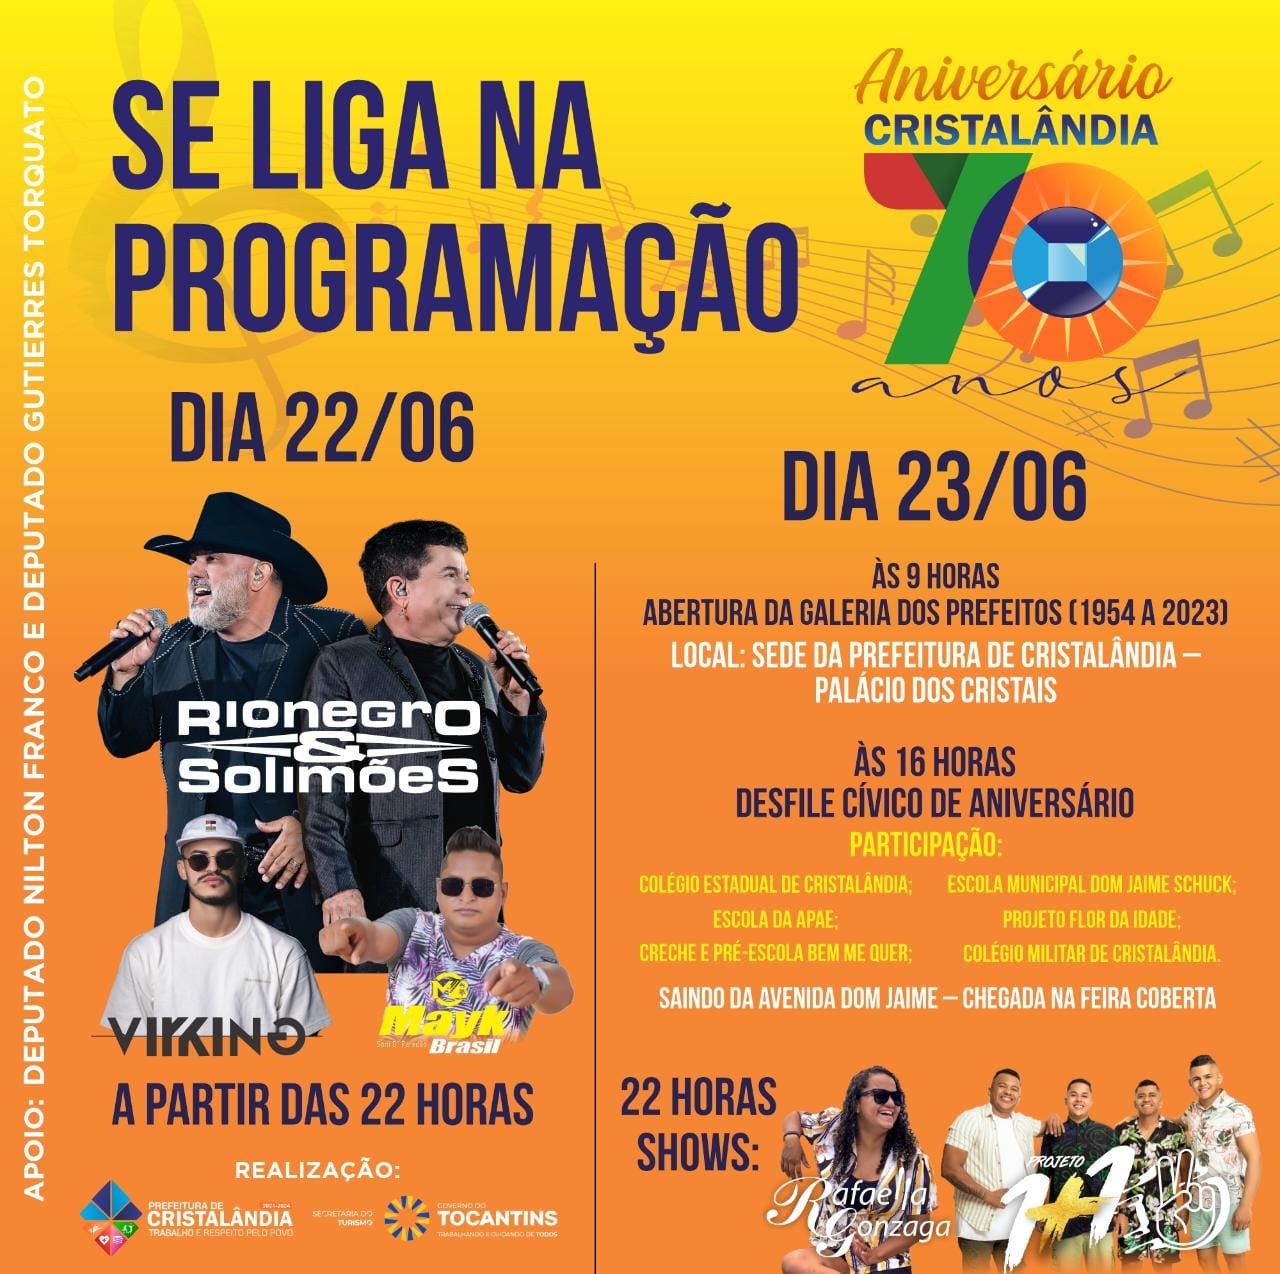 Cristalândia comemora 70 anos com show de Rio Negro & Solimões e ampla programação; CONFIRA